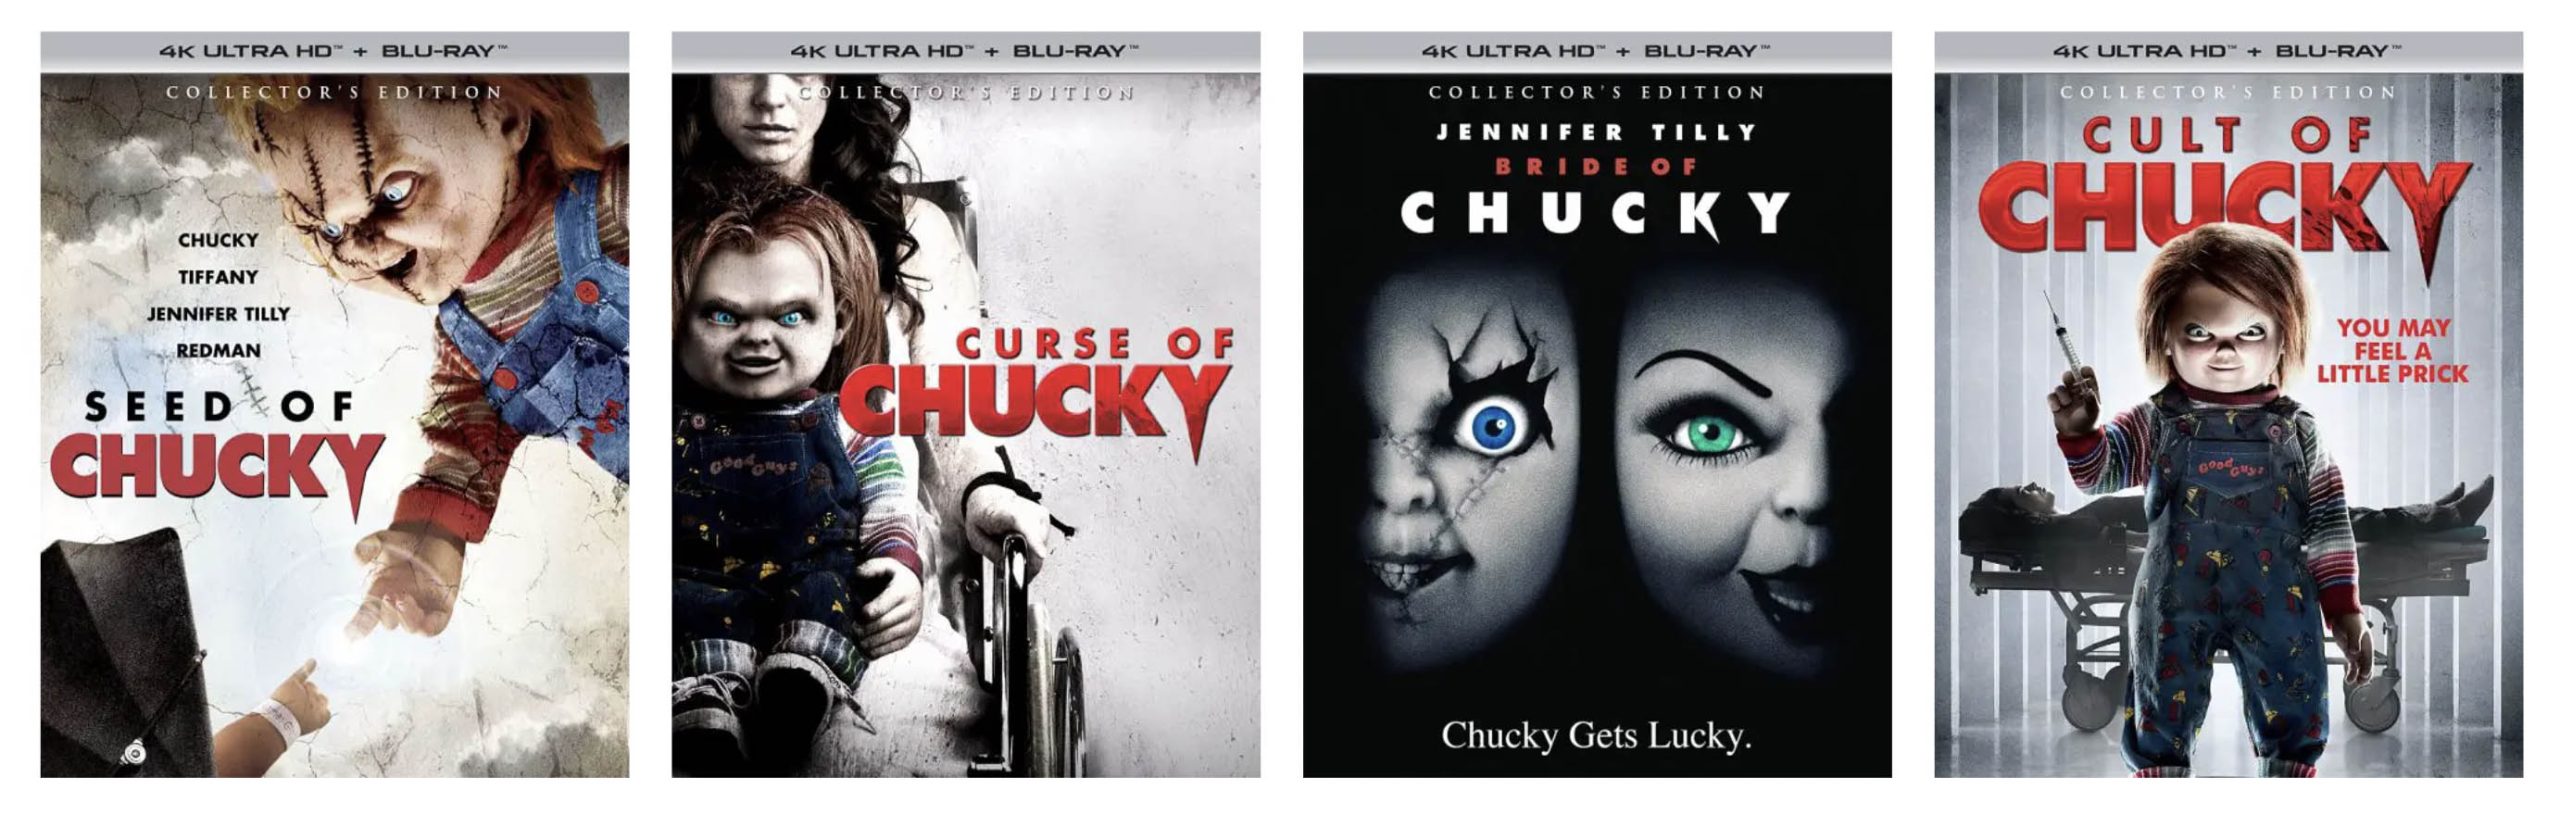 4k Chucky films on 4k Blu-ray